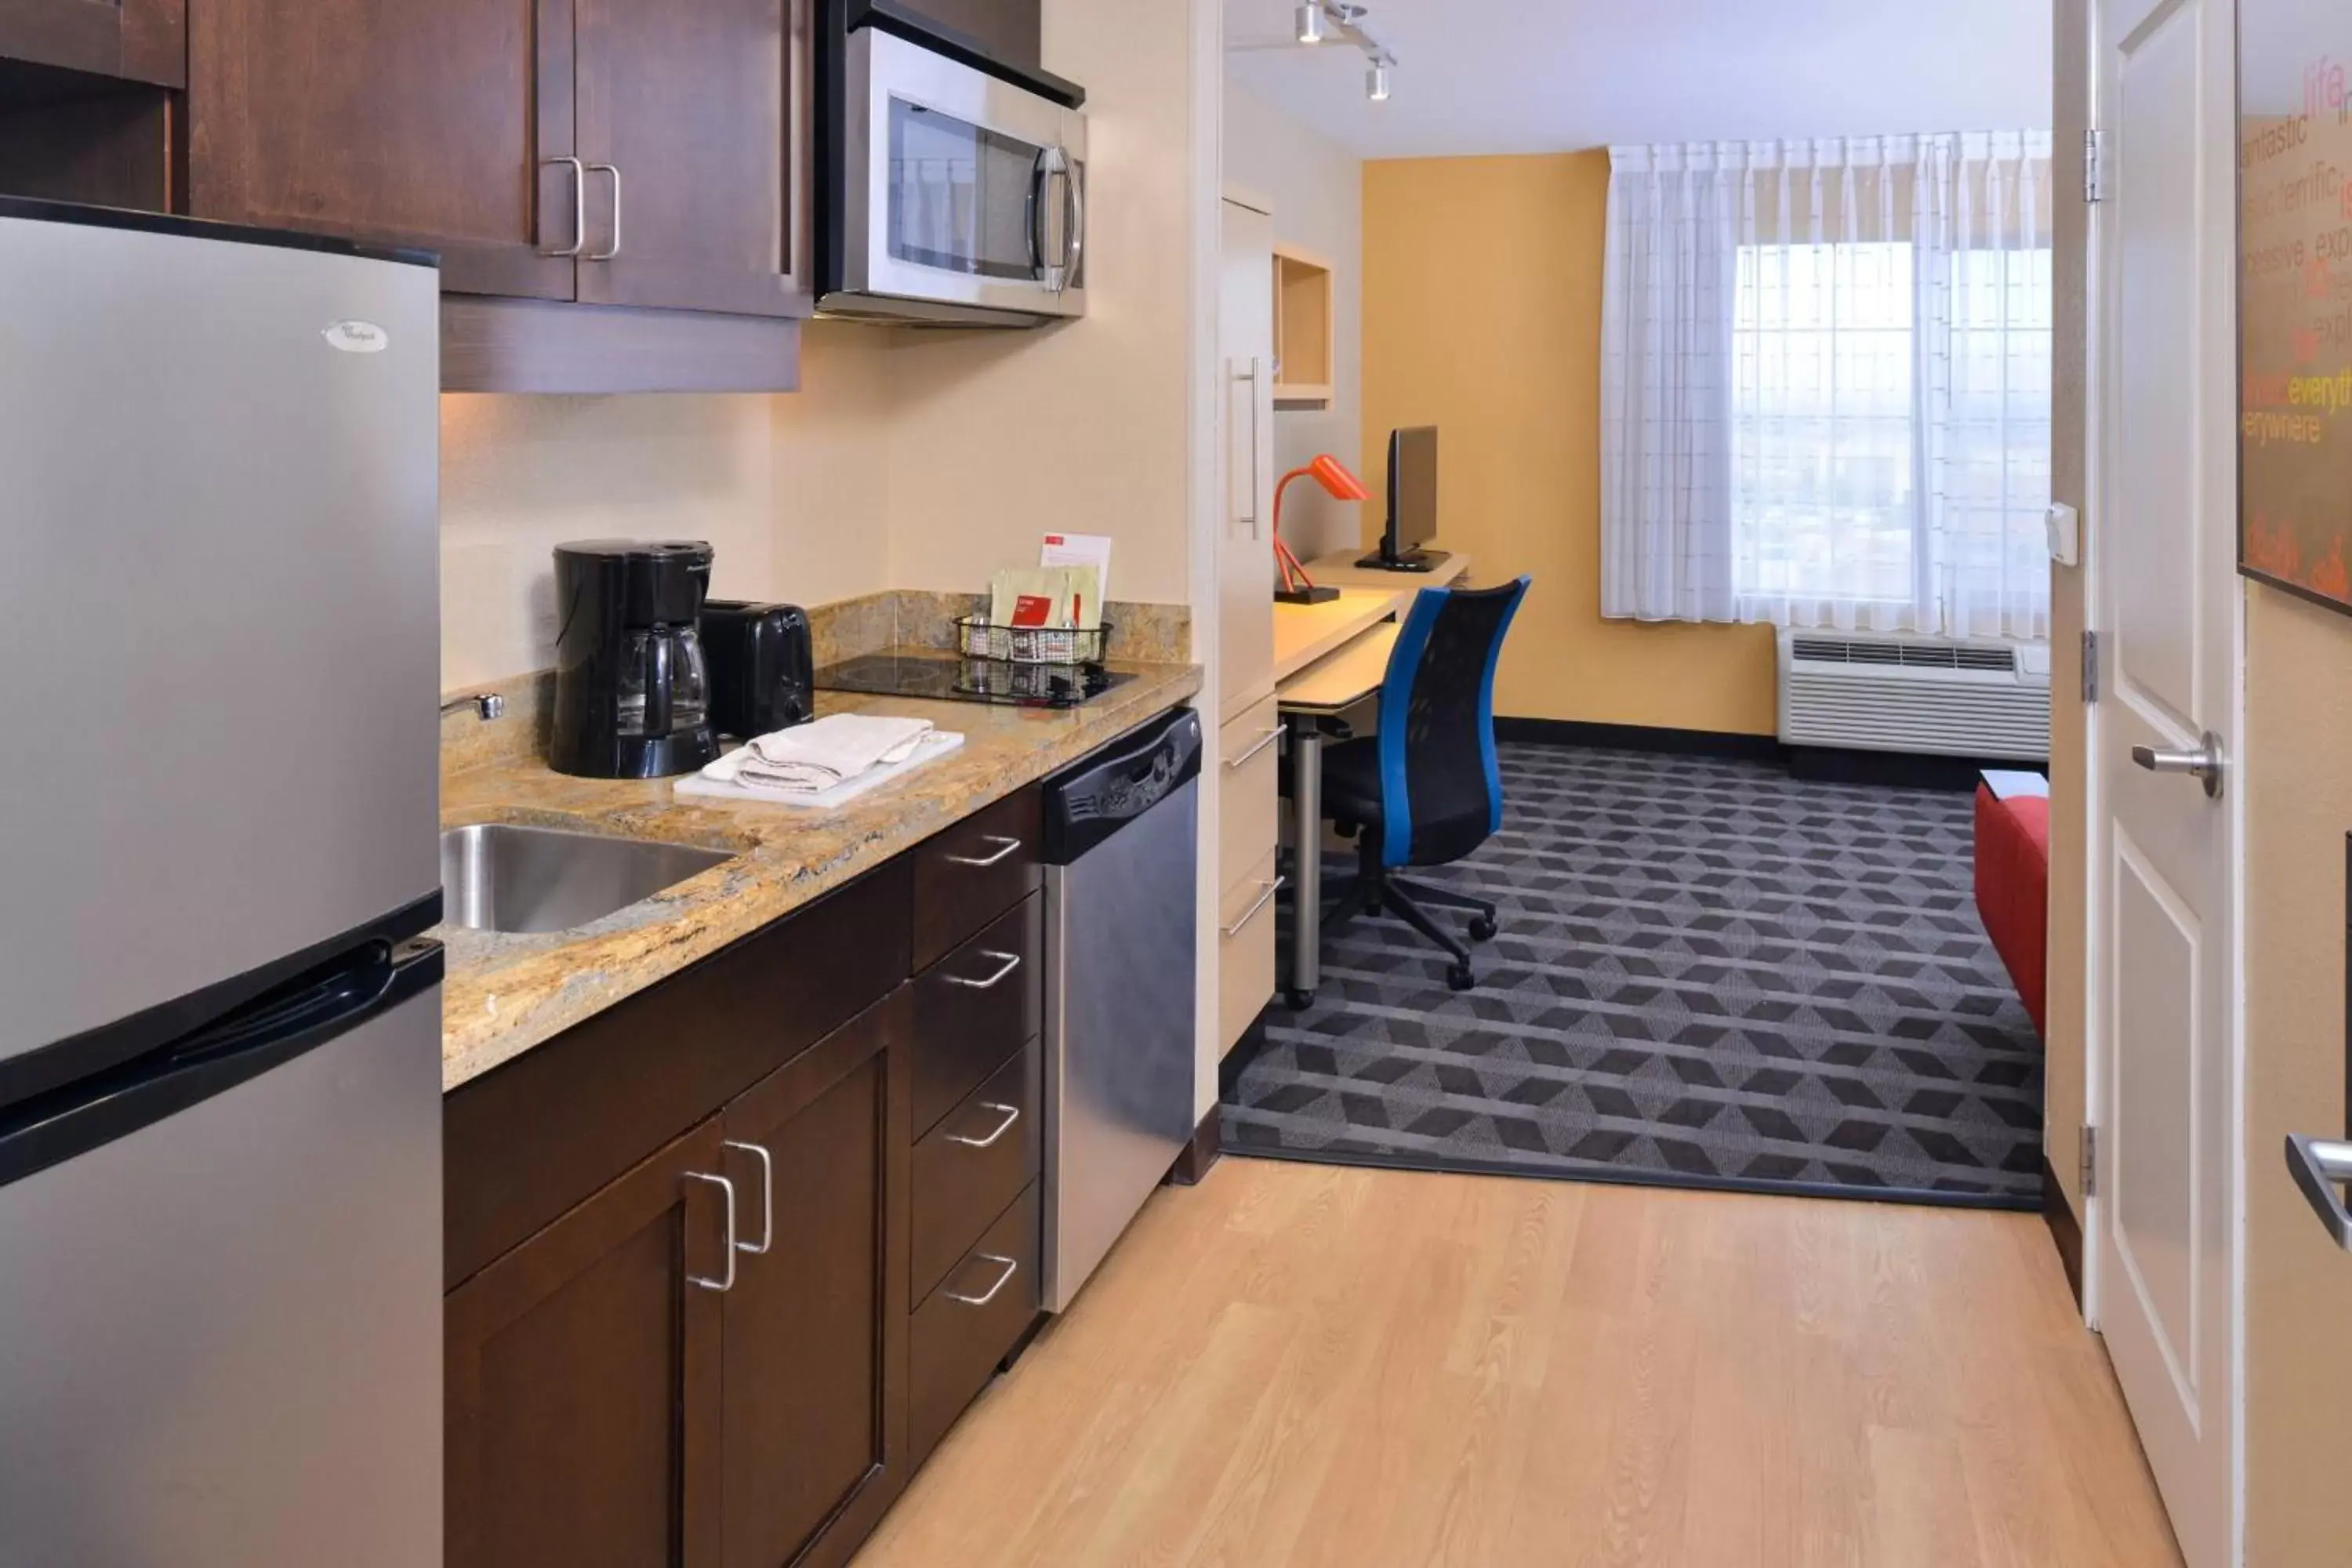 Kitchen or kitchenette, Kitchen/Kitchenette in TownePlace Suites by Marriott Las Vegas Henderson